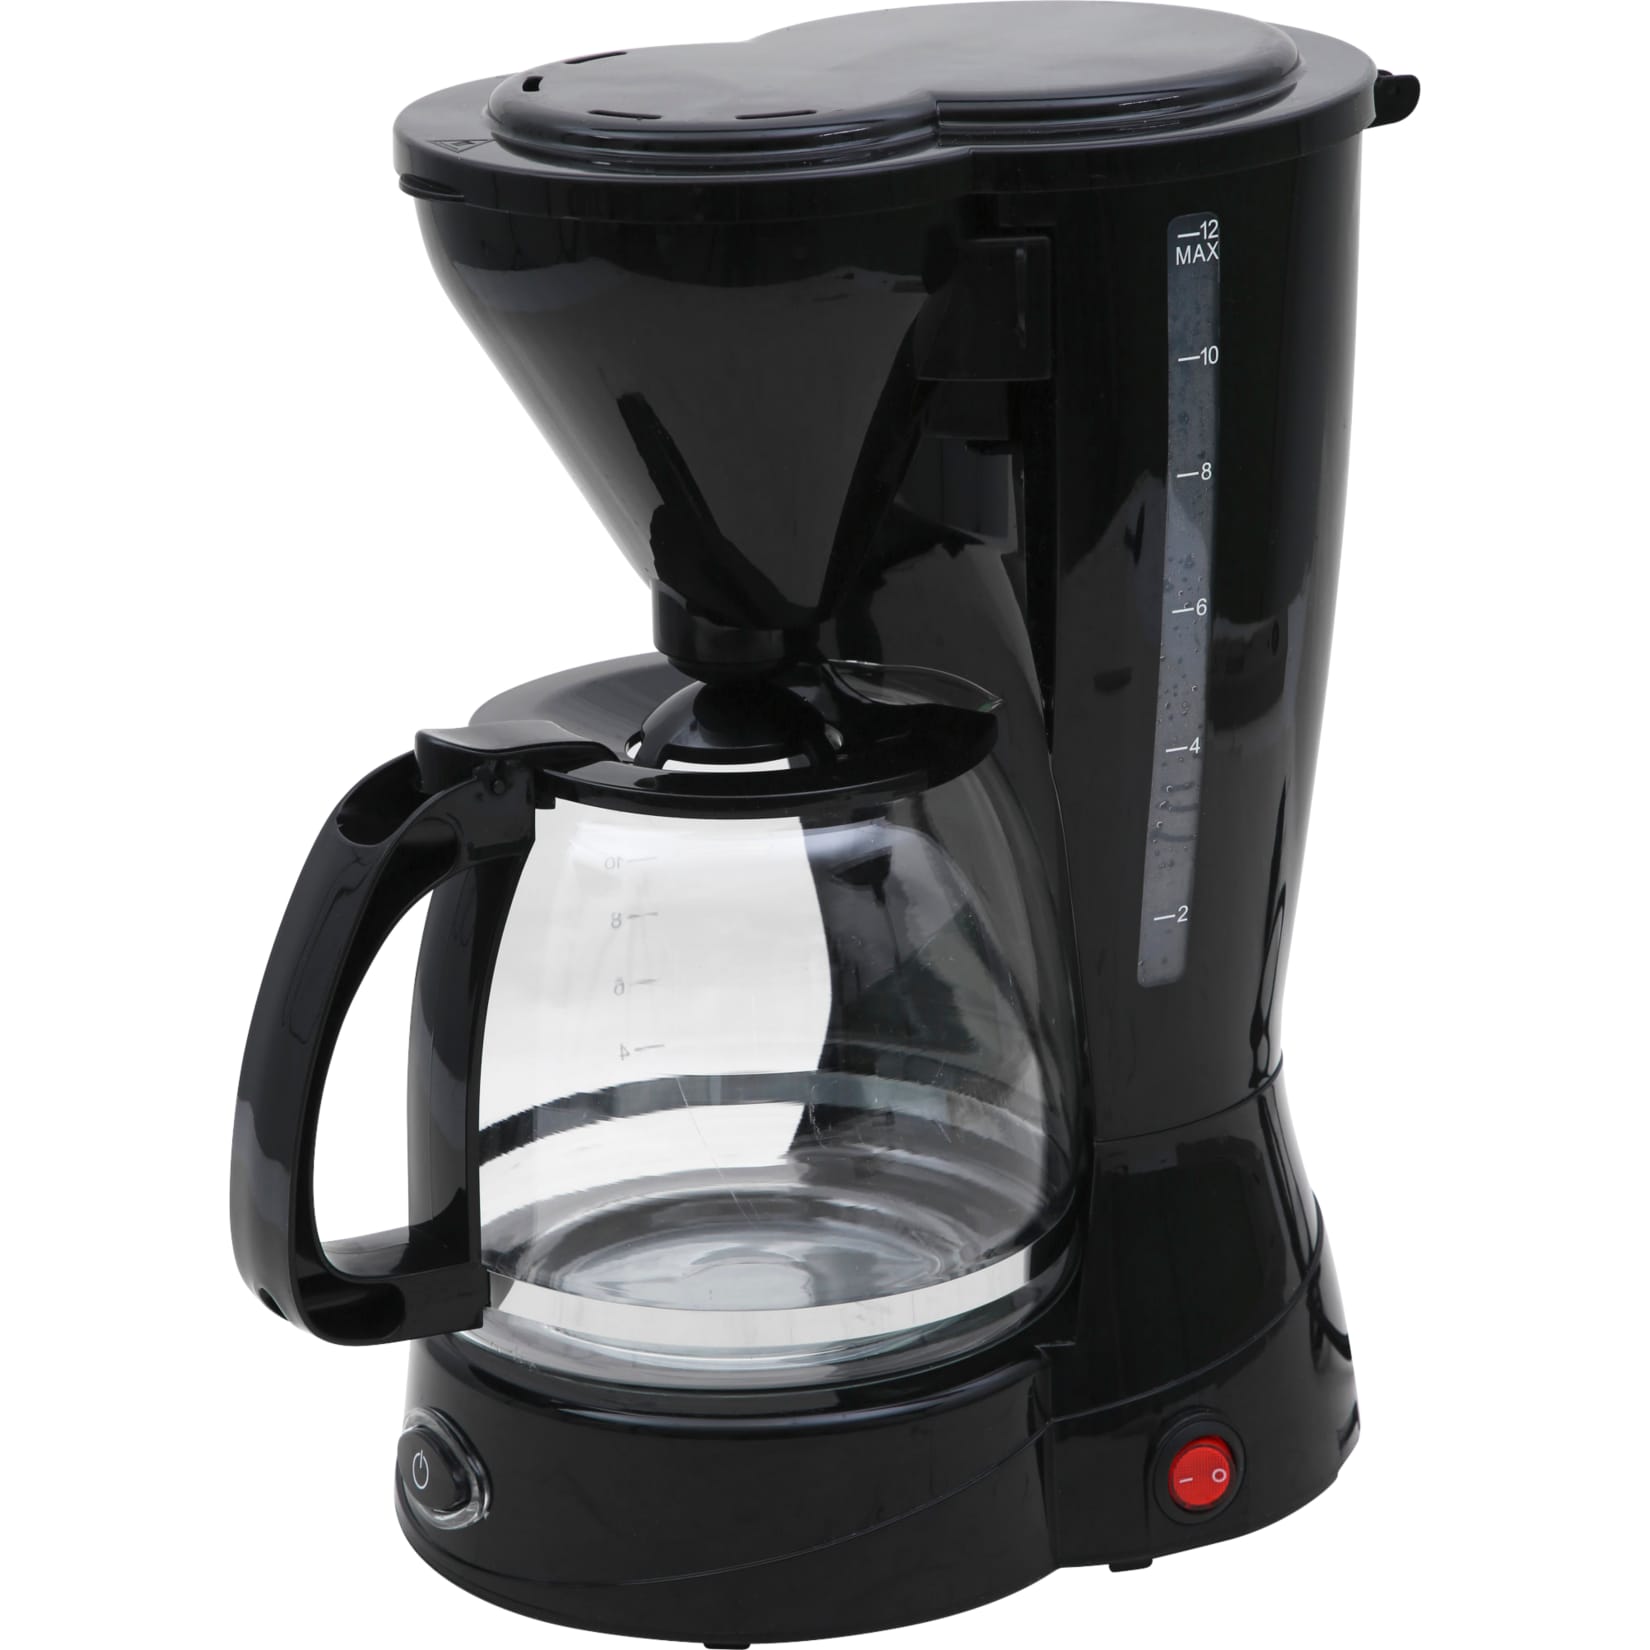 Kaffeemaschine 12 Tassen Filterkaffeemaschine Glas Kanne Kaffee Maschine 800W